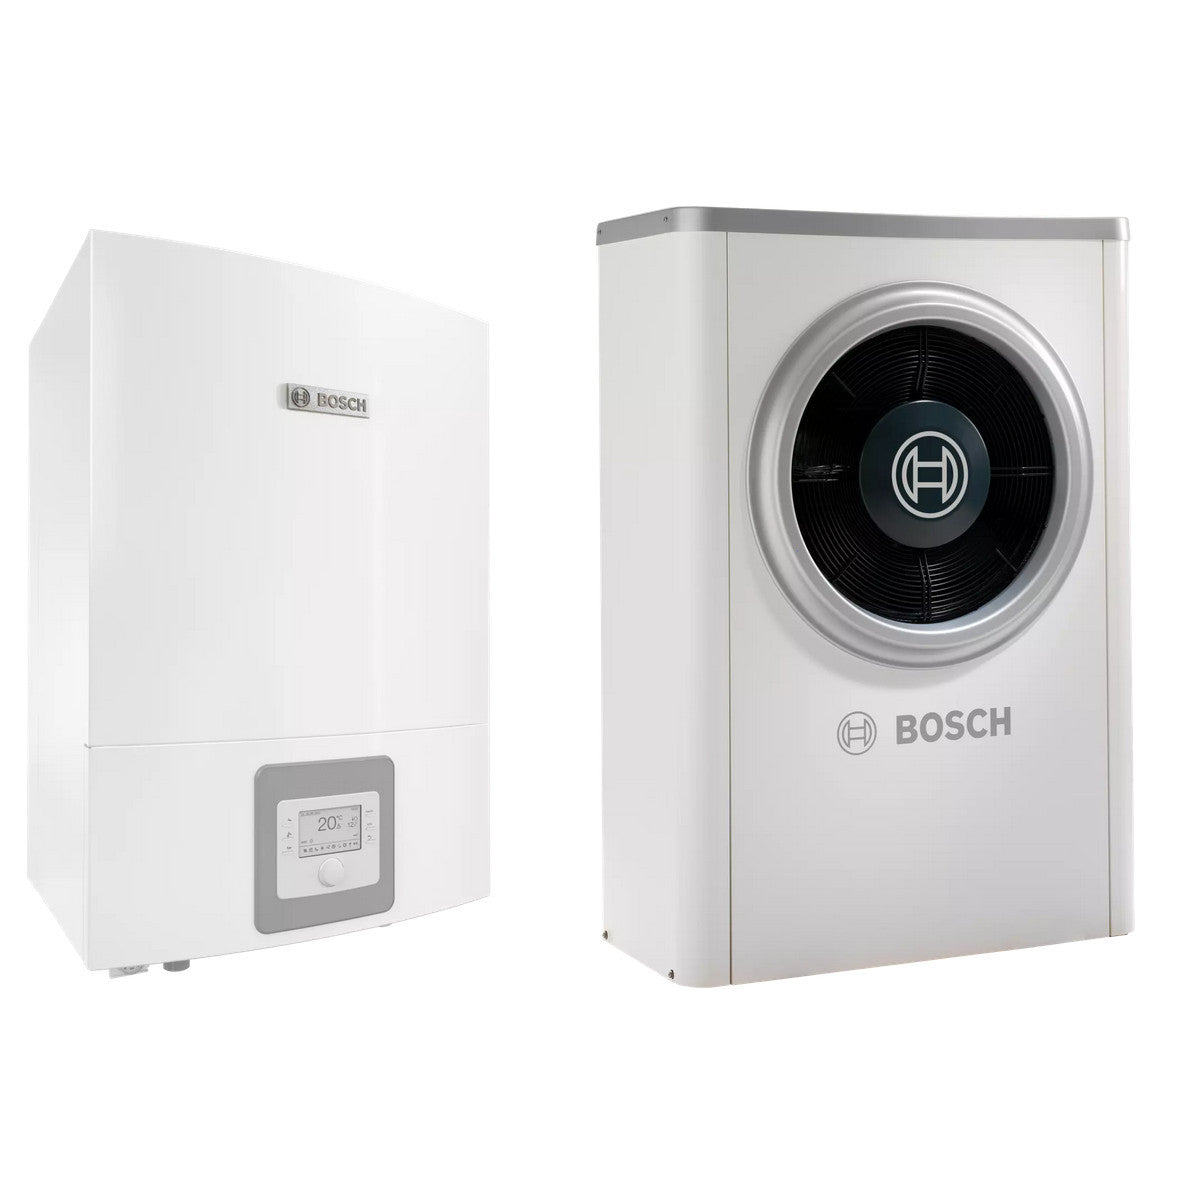 Bosch Compress 6000 AWB+AW-5 levegő-víz hőszivattyú, monoblok, fűtőbetét nélkül, R410A-1